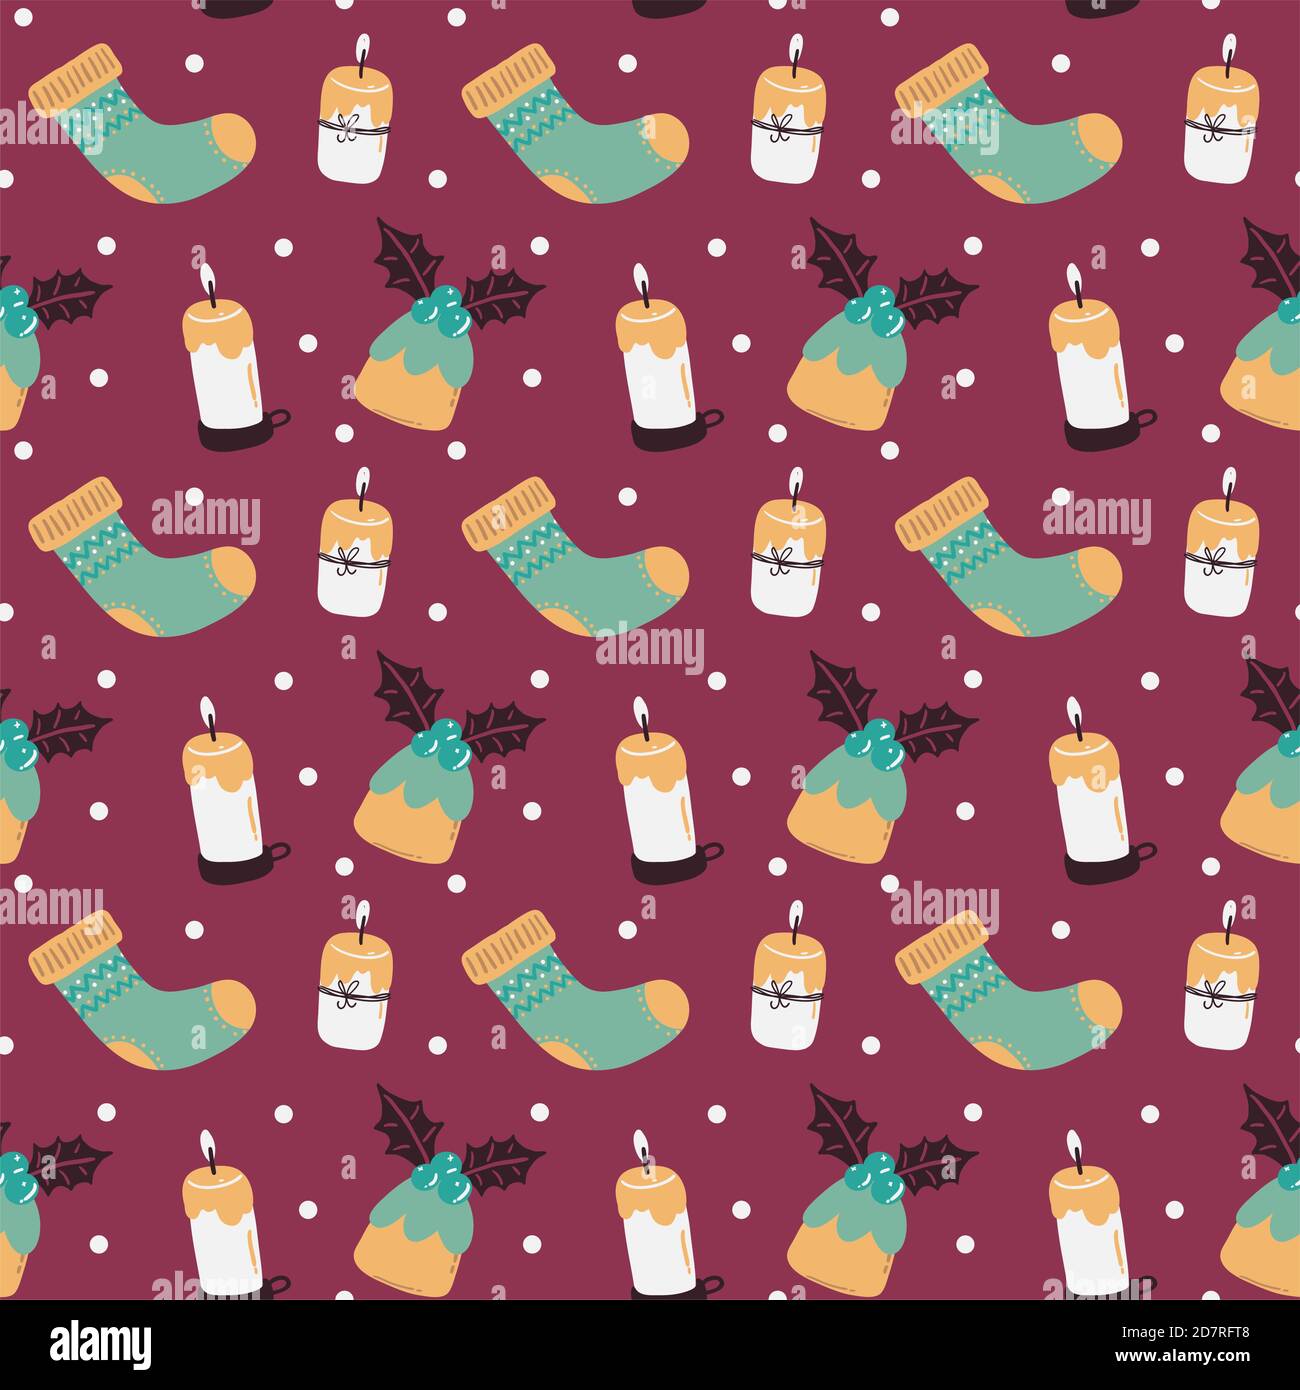 Winter Weihnachten Vektor nahtlose Muster mit Kerzen, festliche Muffins,  Socken und Schnee Punkte auf lila Hintergrund Stock-Vektorgrafik - Alamy